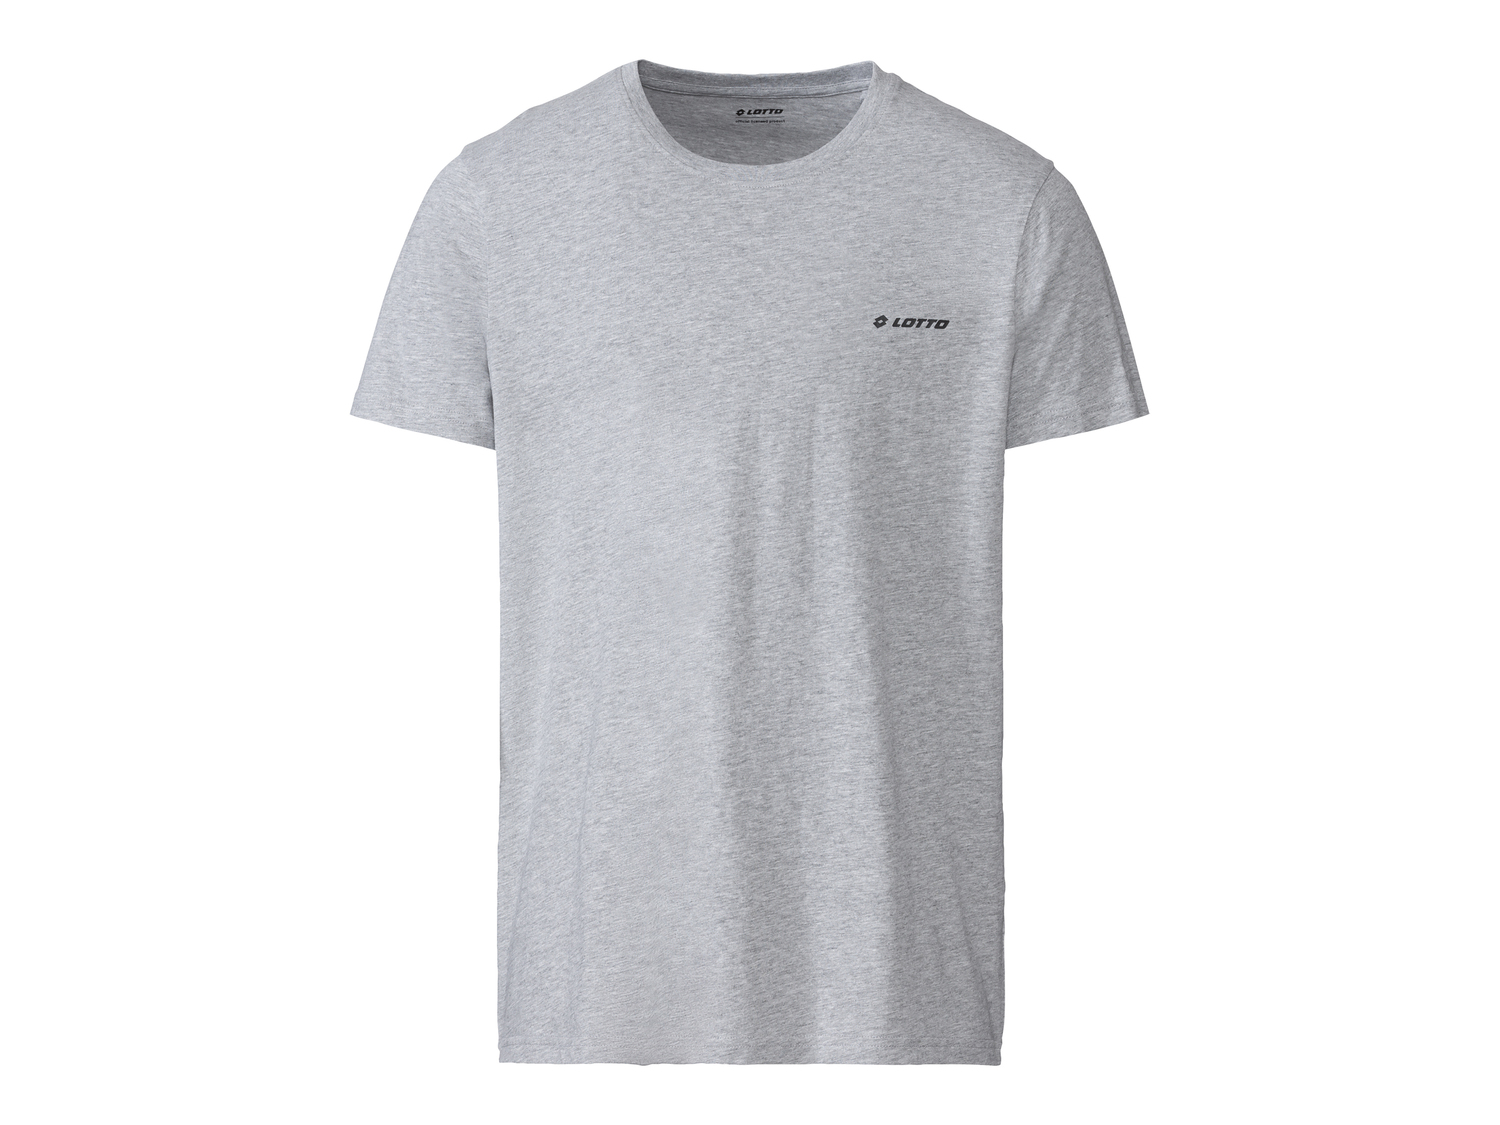 T-shirt da uomo Lotto, prezzo 9.99 &#8364; 
Misure: M-XL
Taglie disponibili

Caratteristiche

- ...